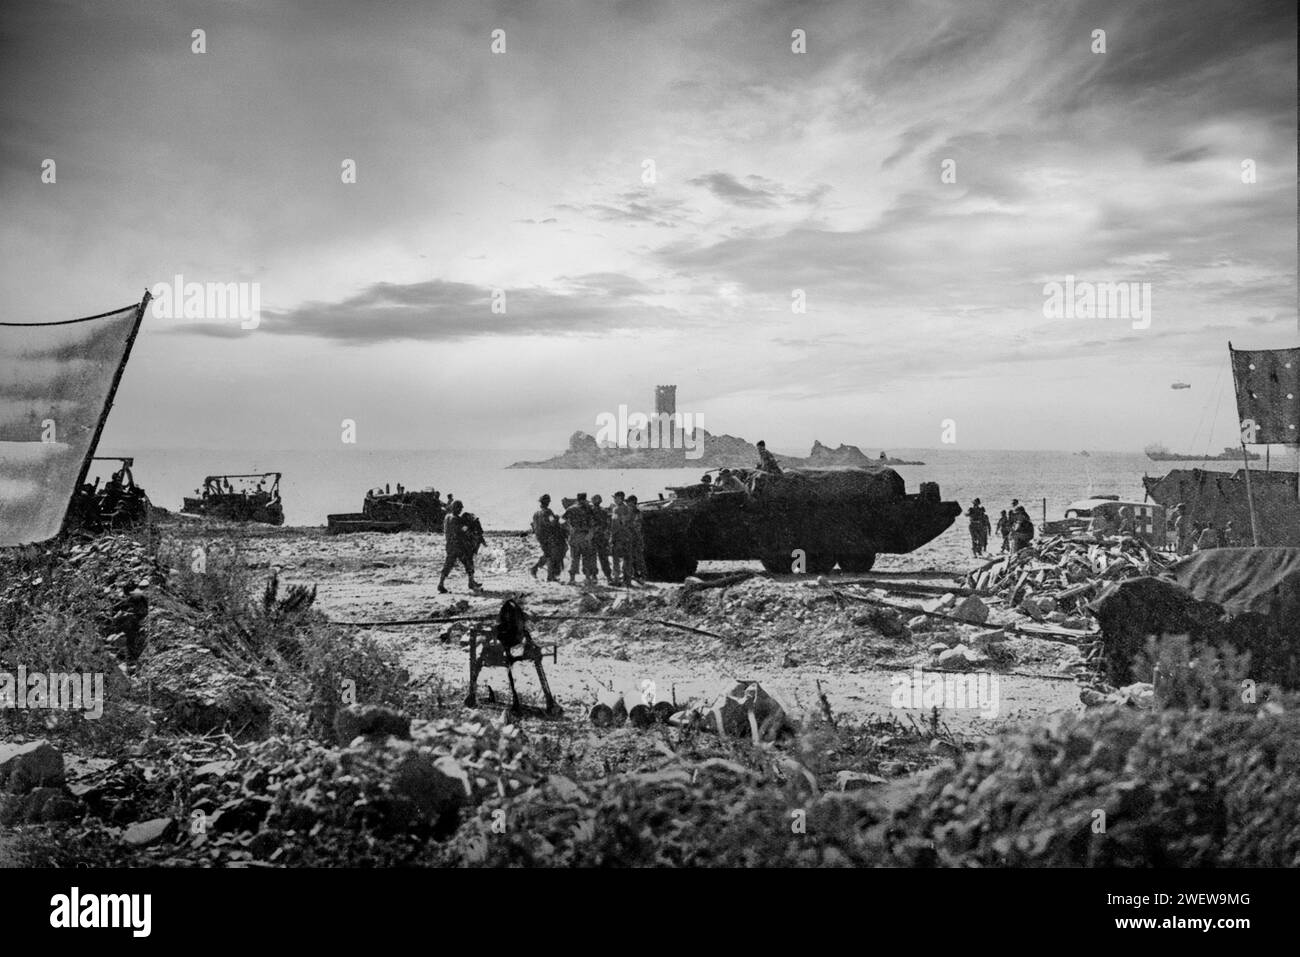 Le 15 août 1944, à 8,00 heures du matin, des engins d’assaut débarquent les troupes alliées sur la côte sud de la France, dans le cadre de l’invasion alliée de l’Europe pendant la Seconde Guerre mondiale. Banque D'Images